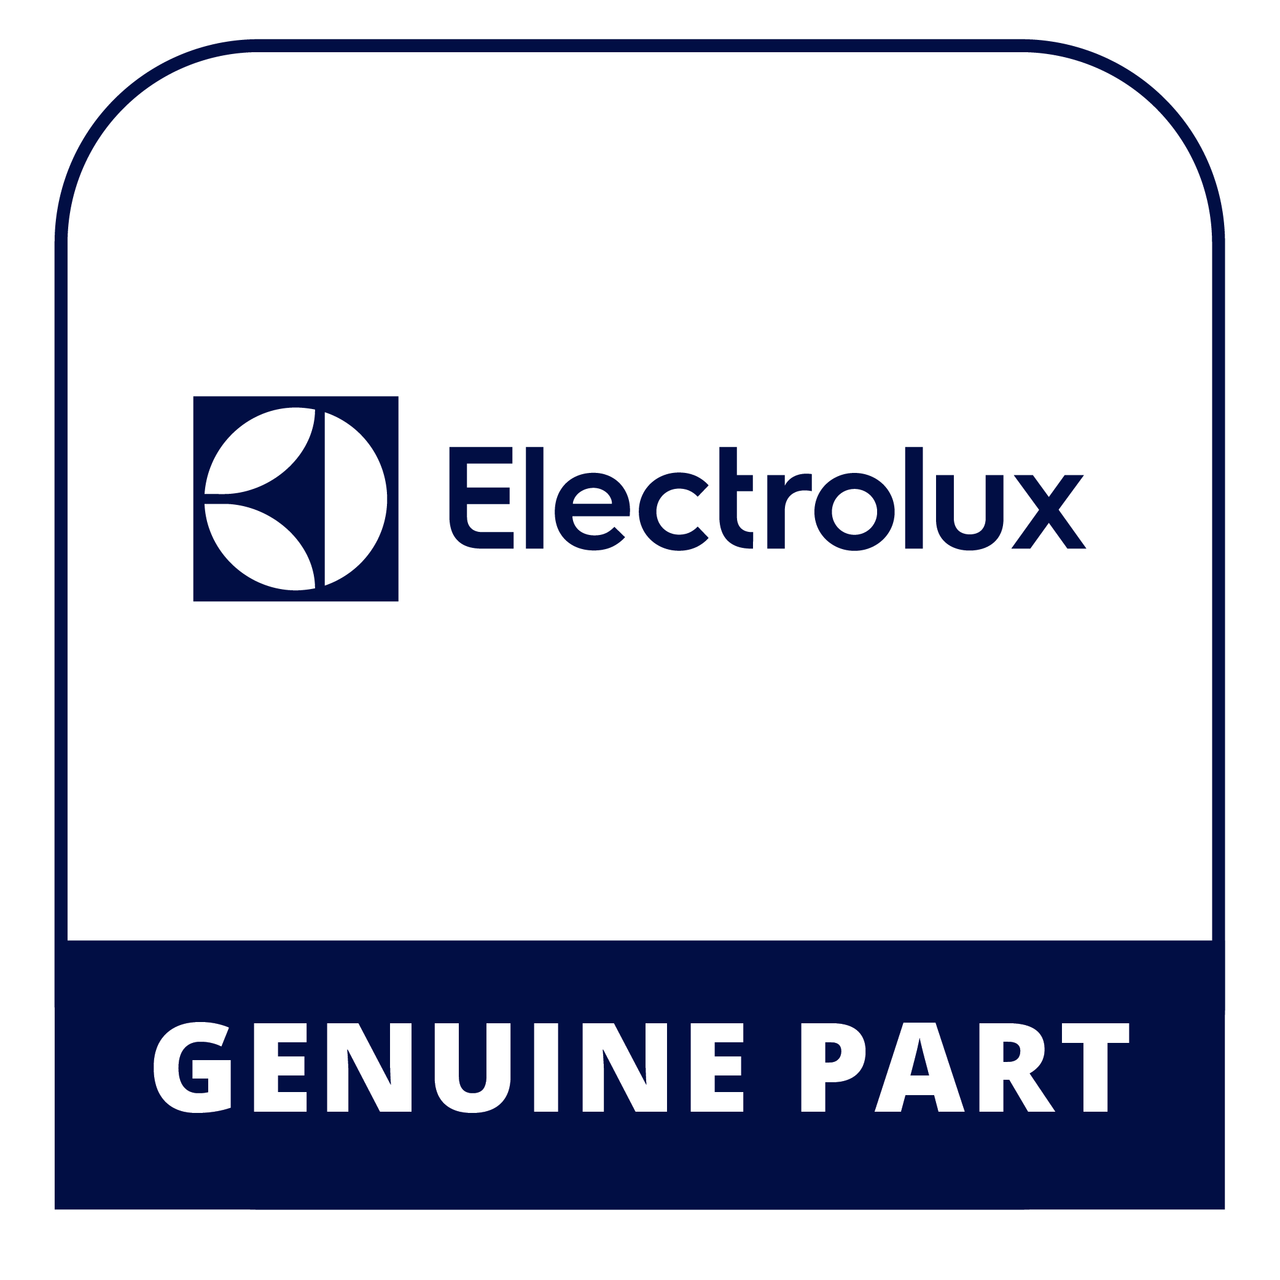 Frigidaire - Electrolux 318186914 - Lp Conversion Kit - Genuine Electrolux Part